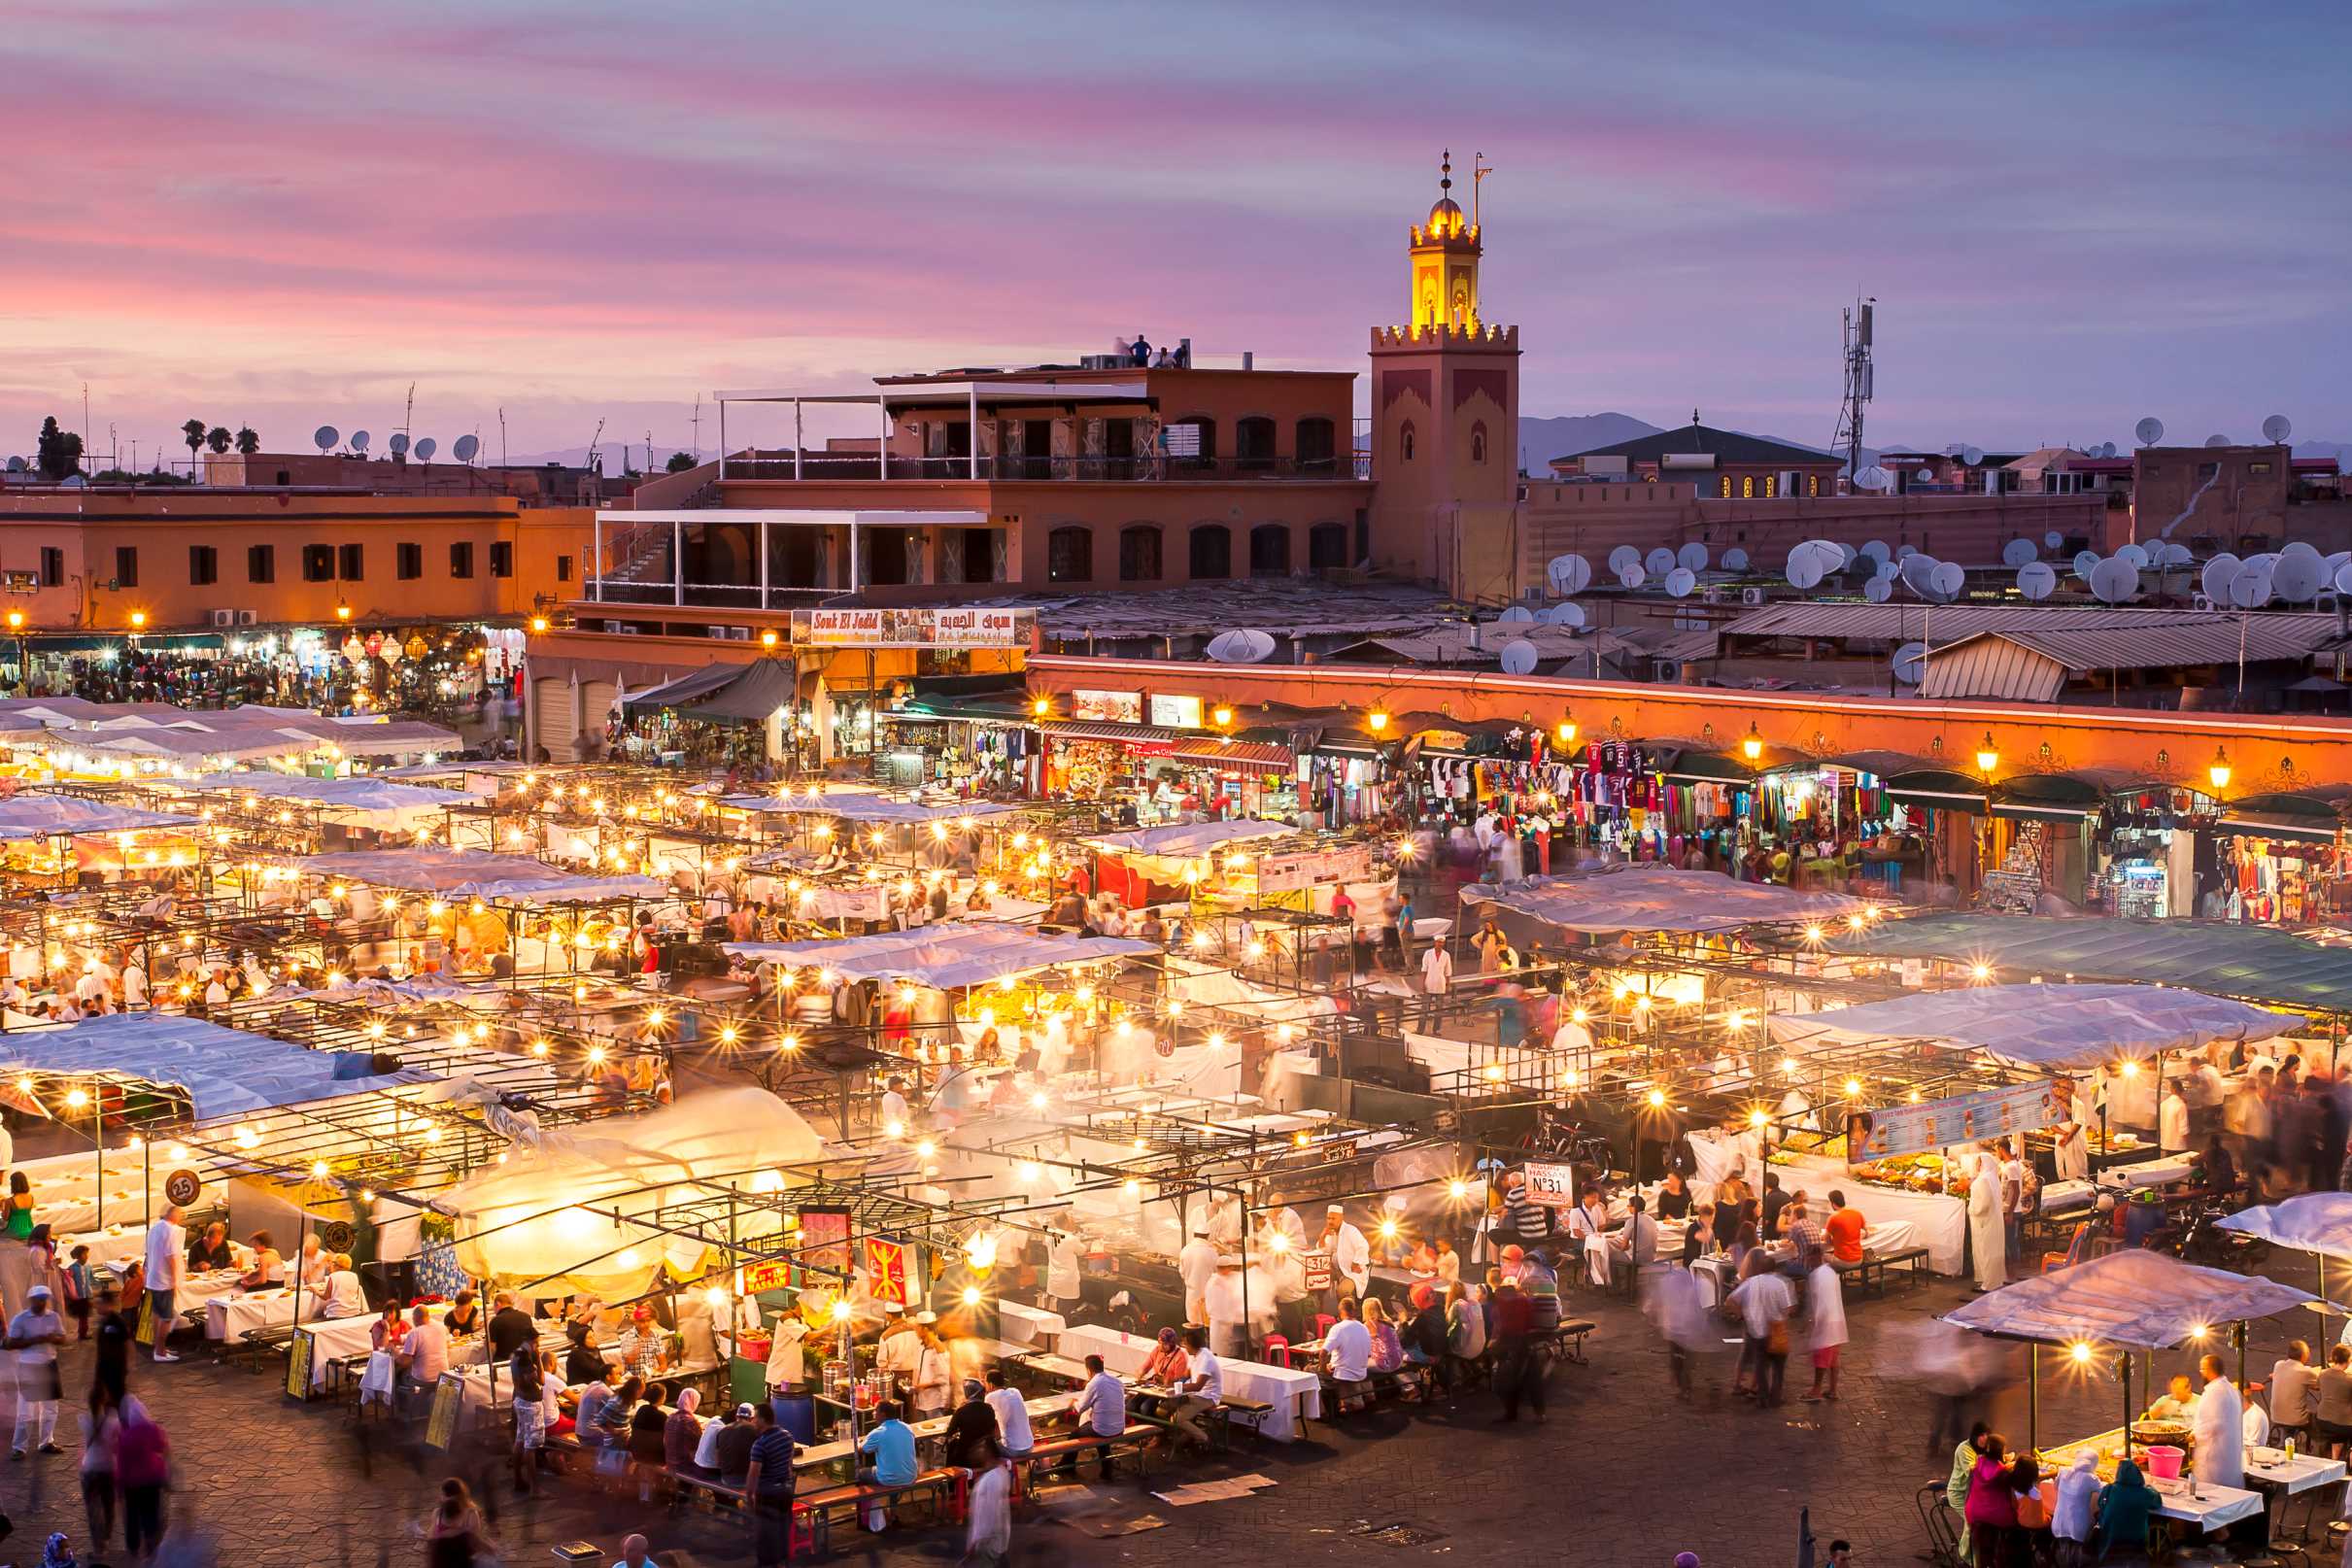 PLACE JEMAÂ EL-FNA (site urbain (rue, place, quartier) - MARRAKECH / Maroc)